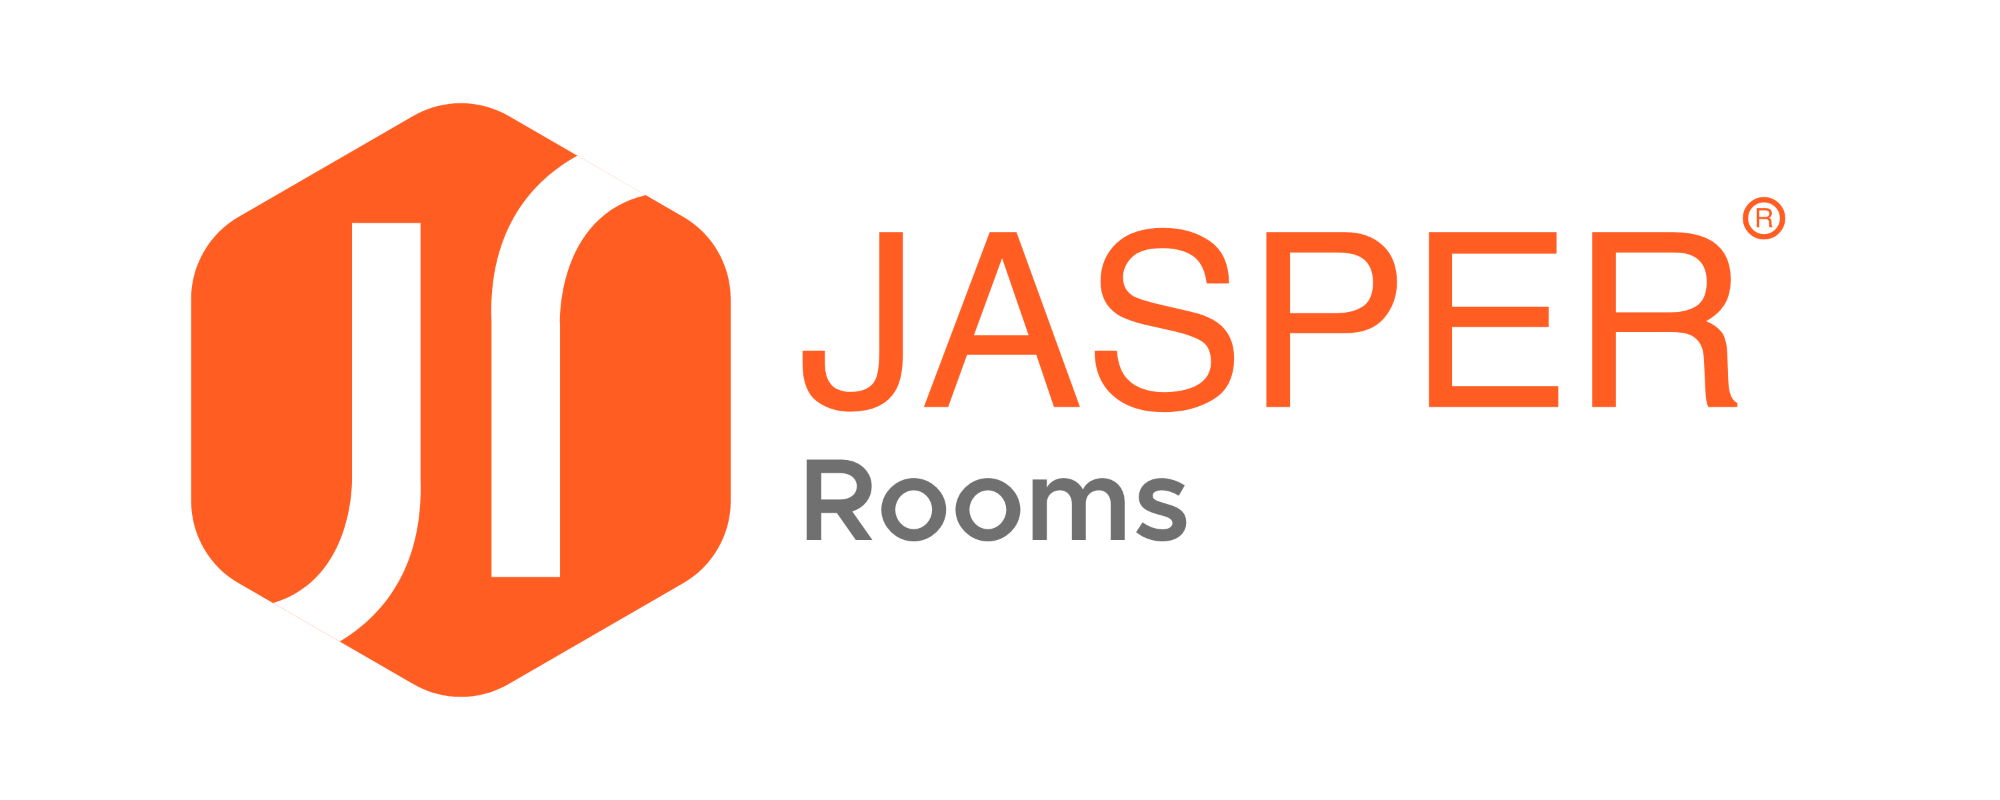 Jasper Rooms